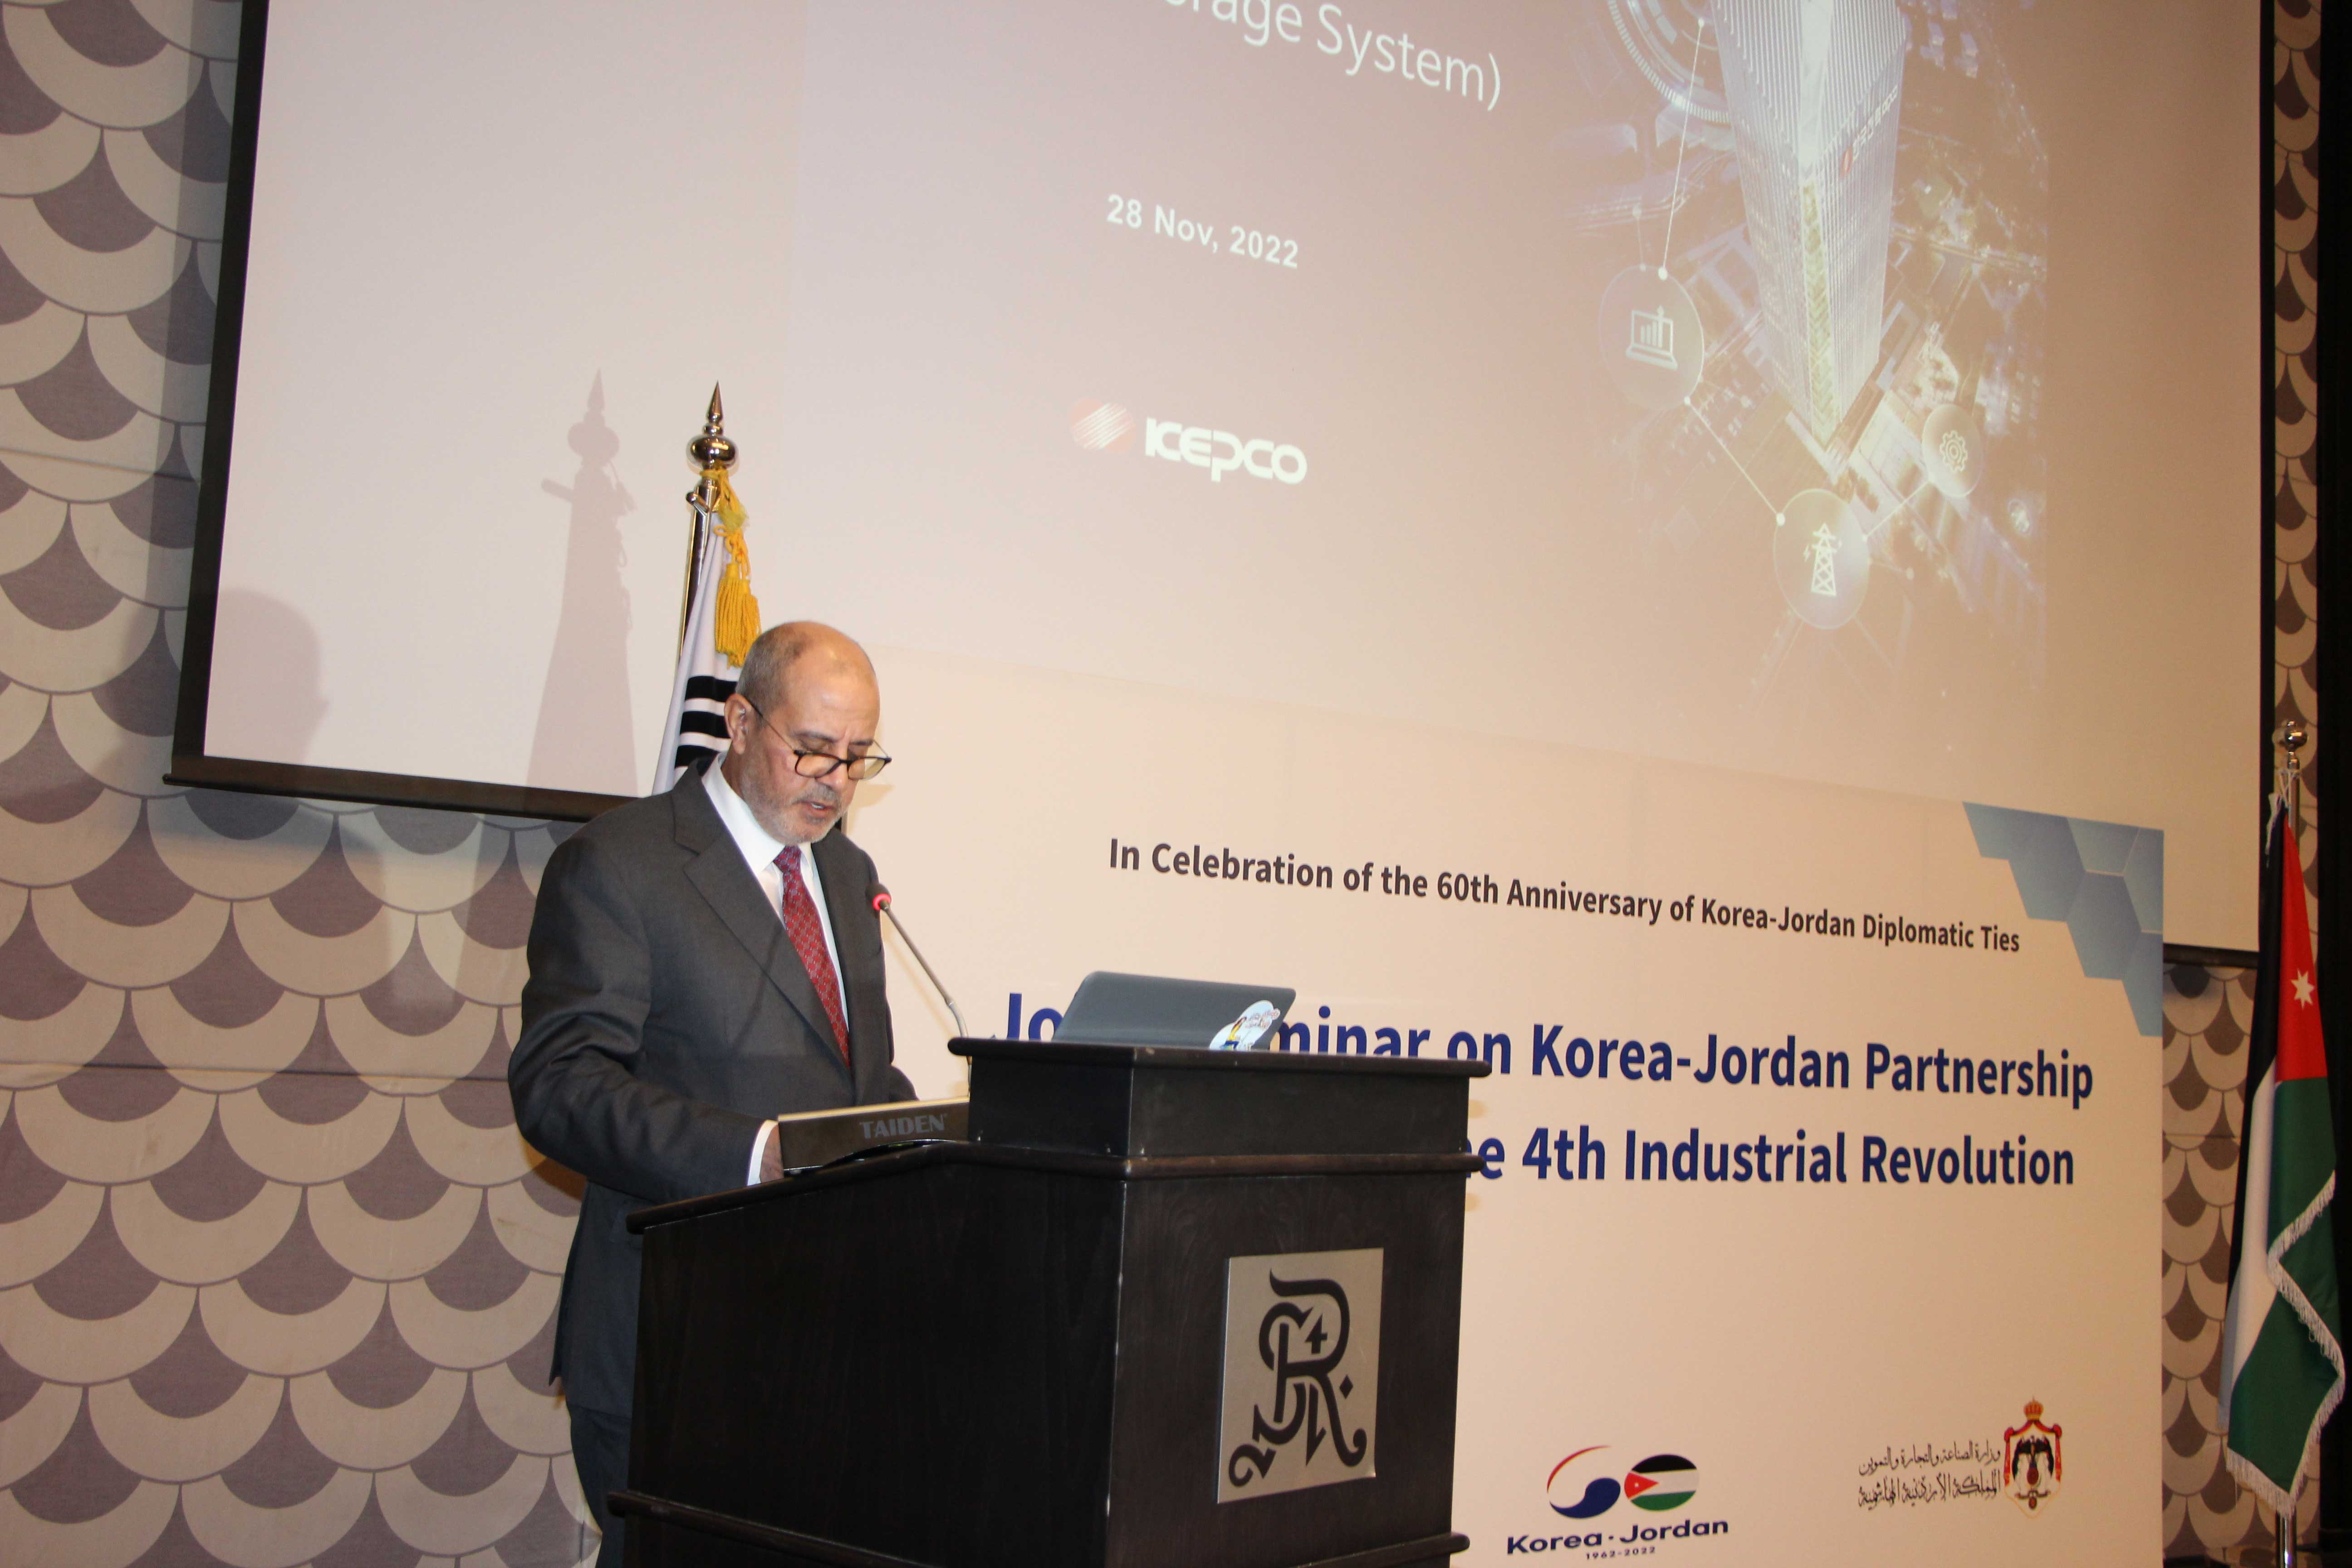 وزير الصناعة والتجارة يدعو لبناء شراكات أردنية-كورية توظف تقنيات الثورة الصناعية الرابعة